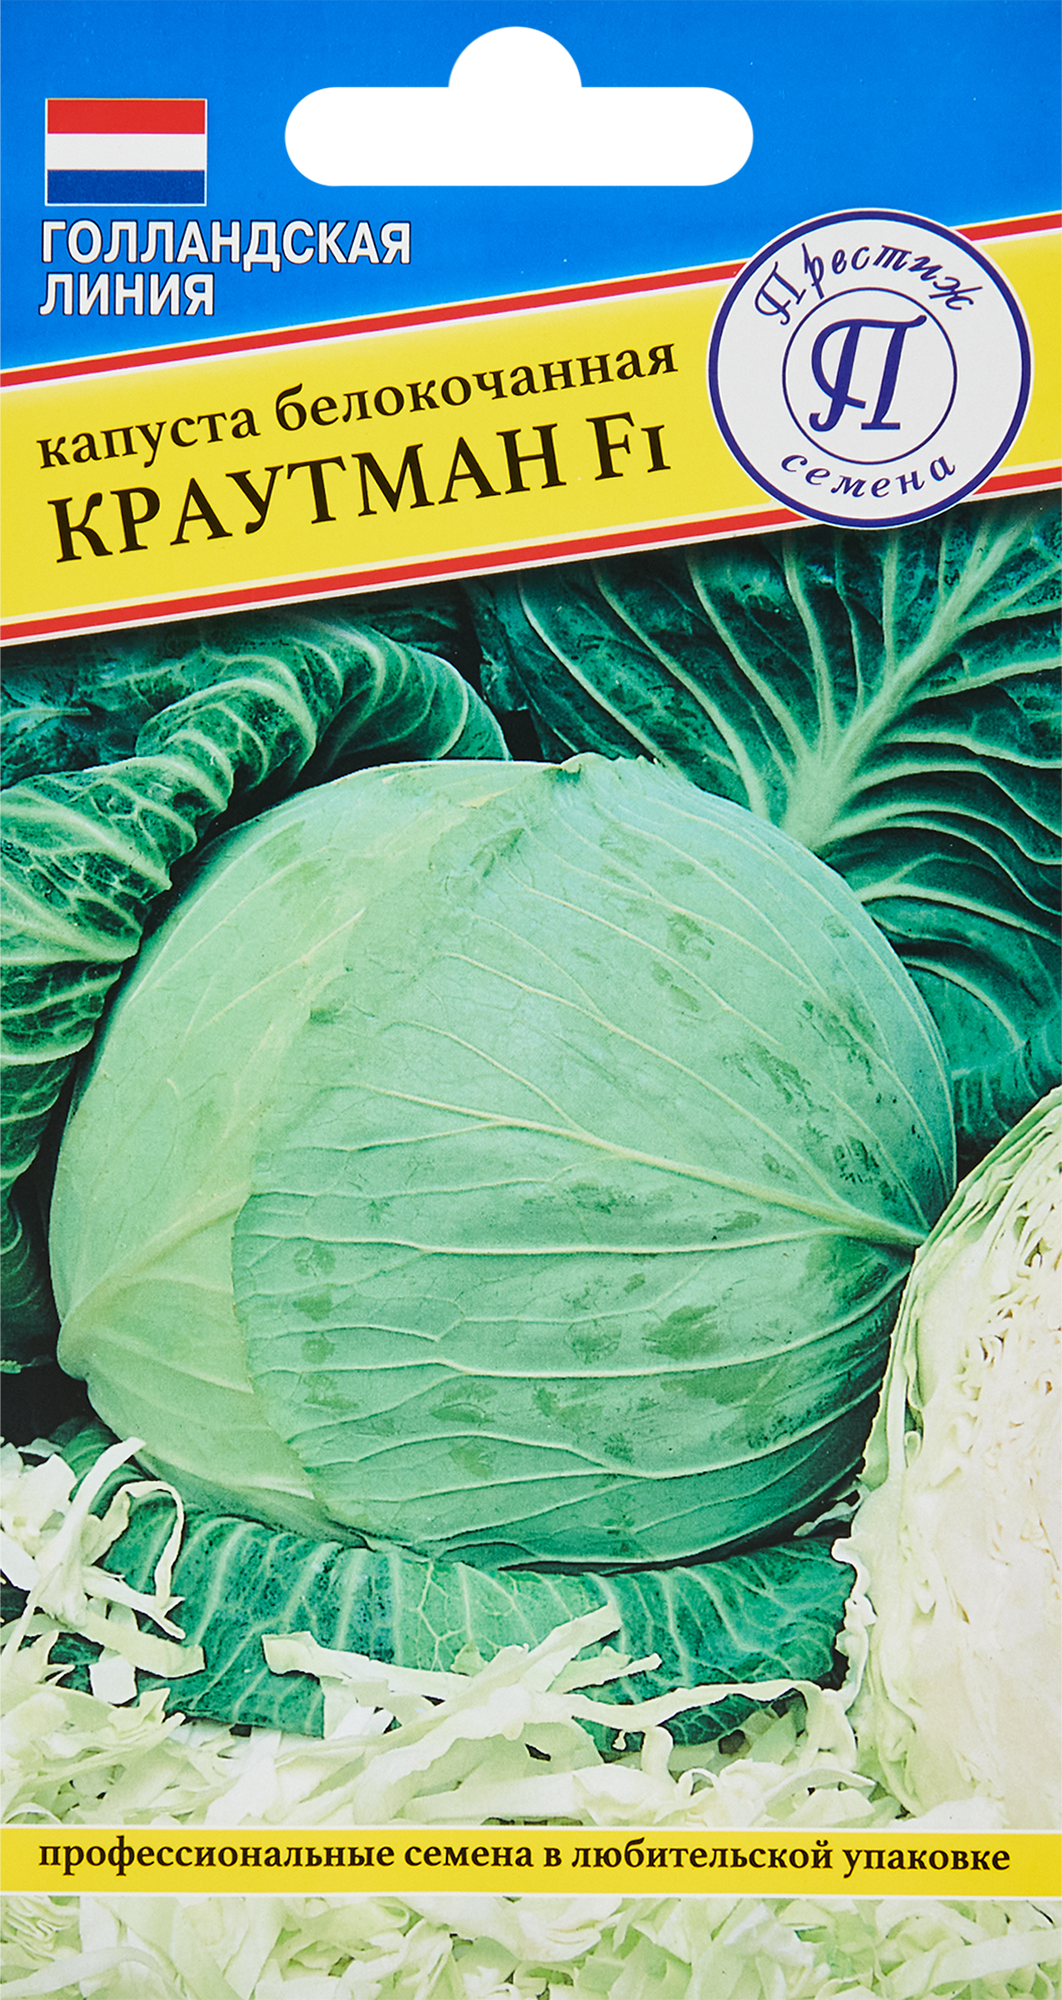 Семена овощей капуста белокочанная Краутман F1, 10 шт. в Москве – купить понизкой цене в интернет-магазине Леруа Мерлен